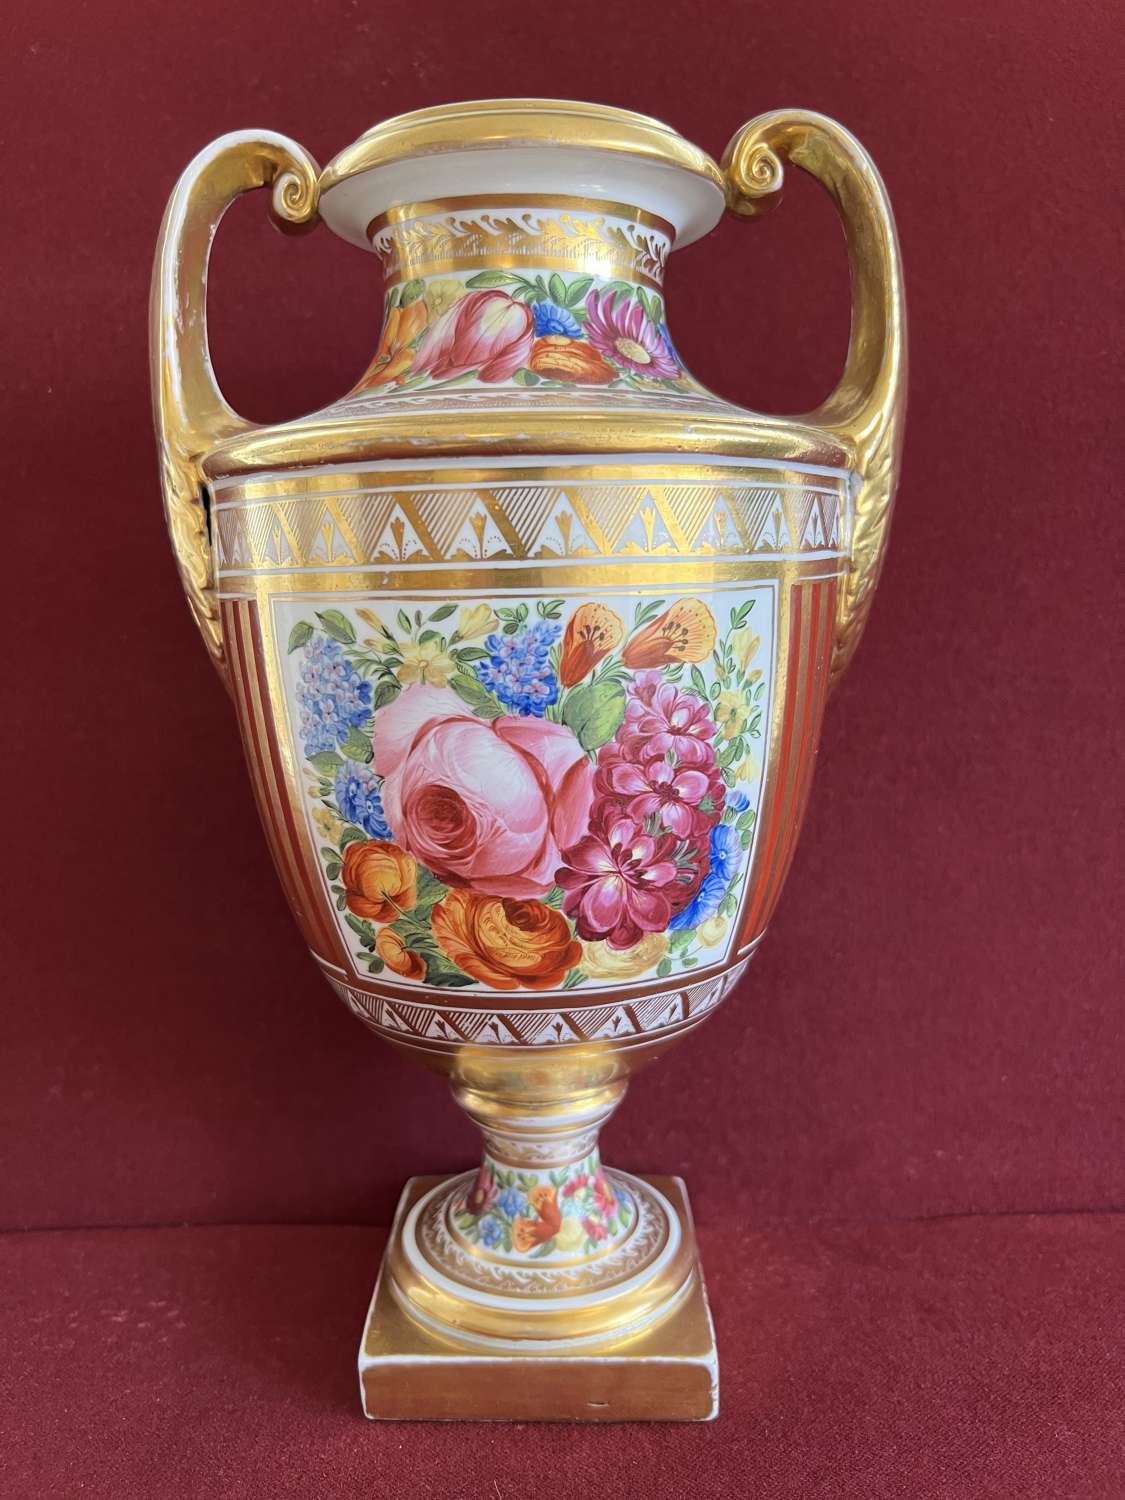 A Coalport Hybrid Hard-Paste Porcelain Vase c.1800